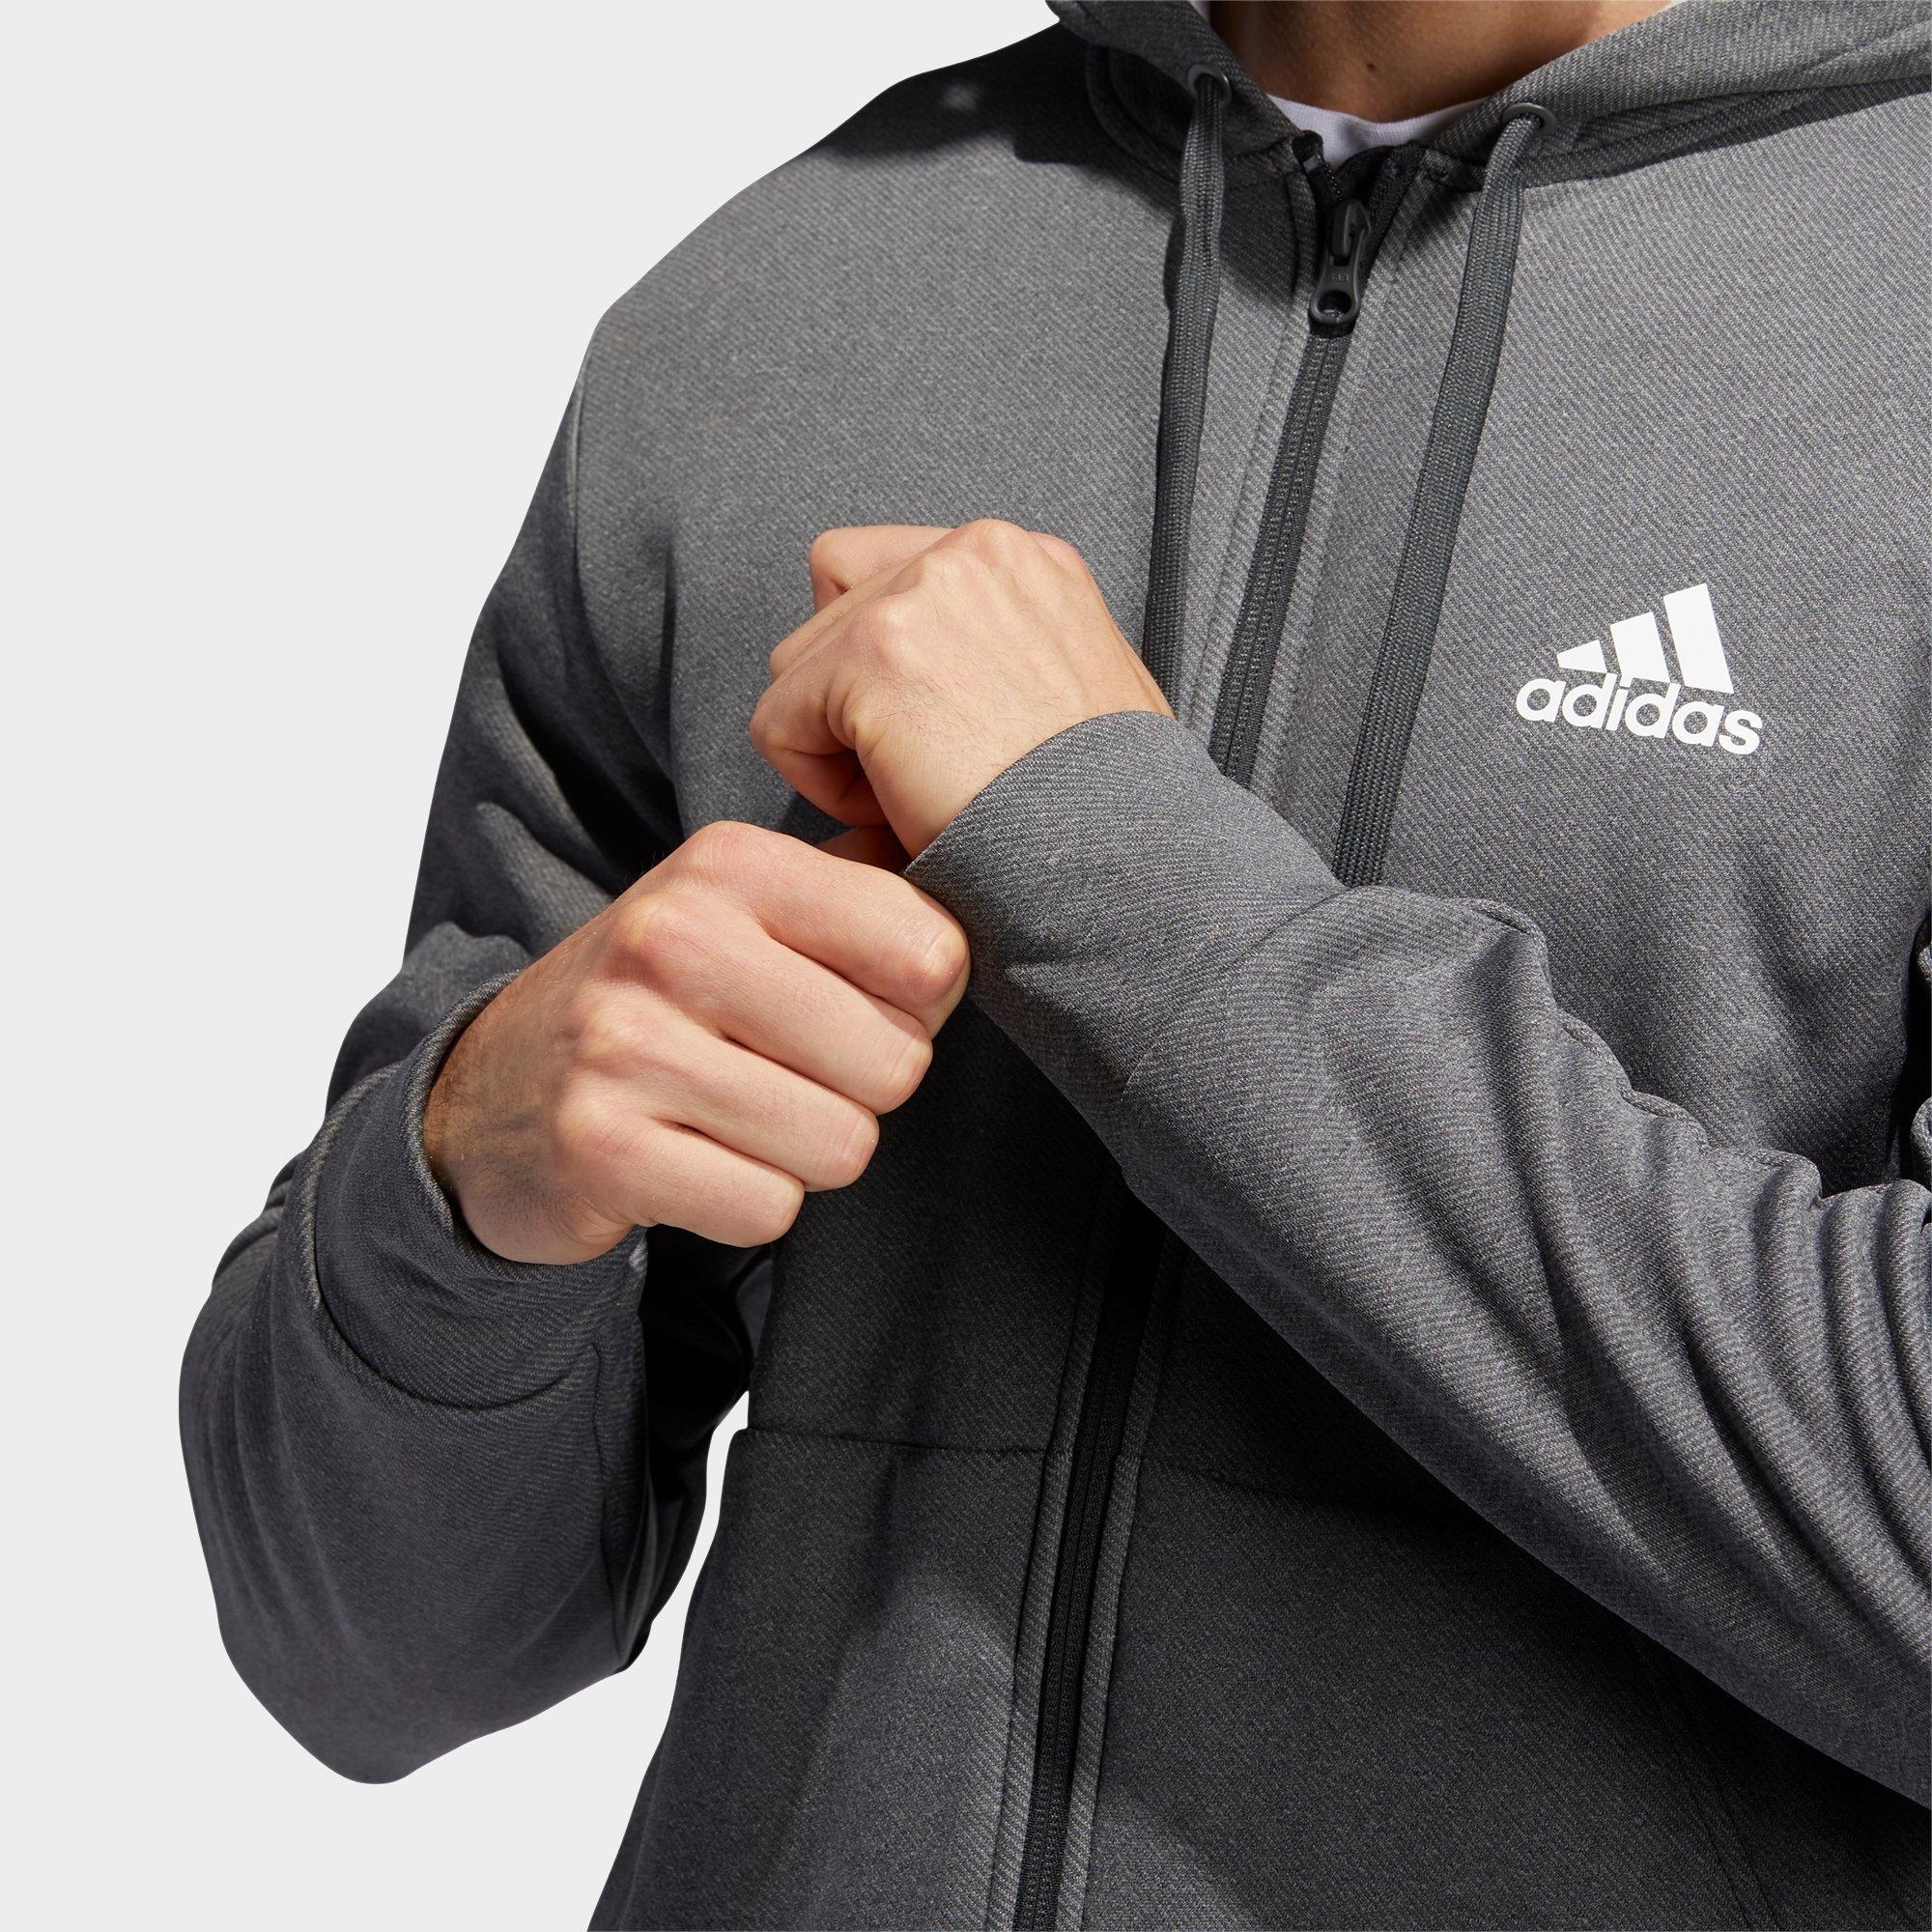 adidas team issue full zip hoodie